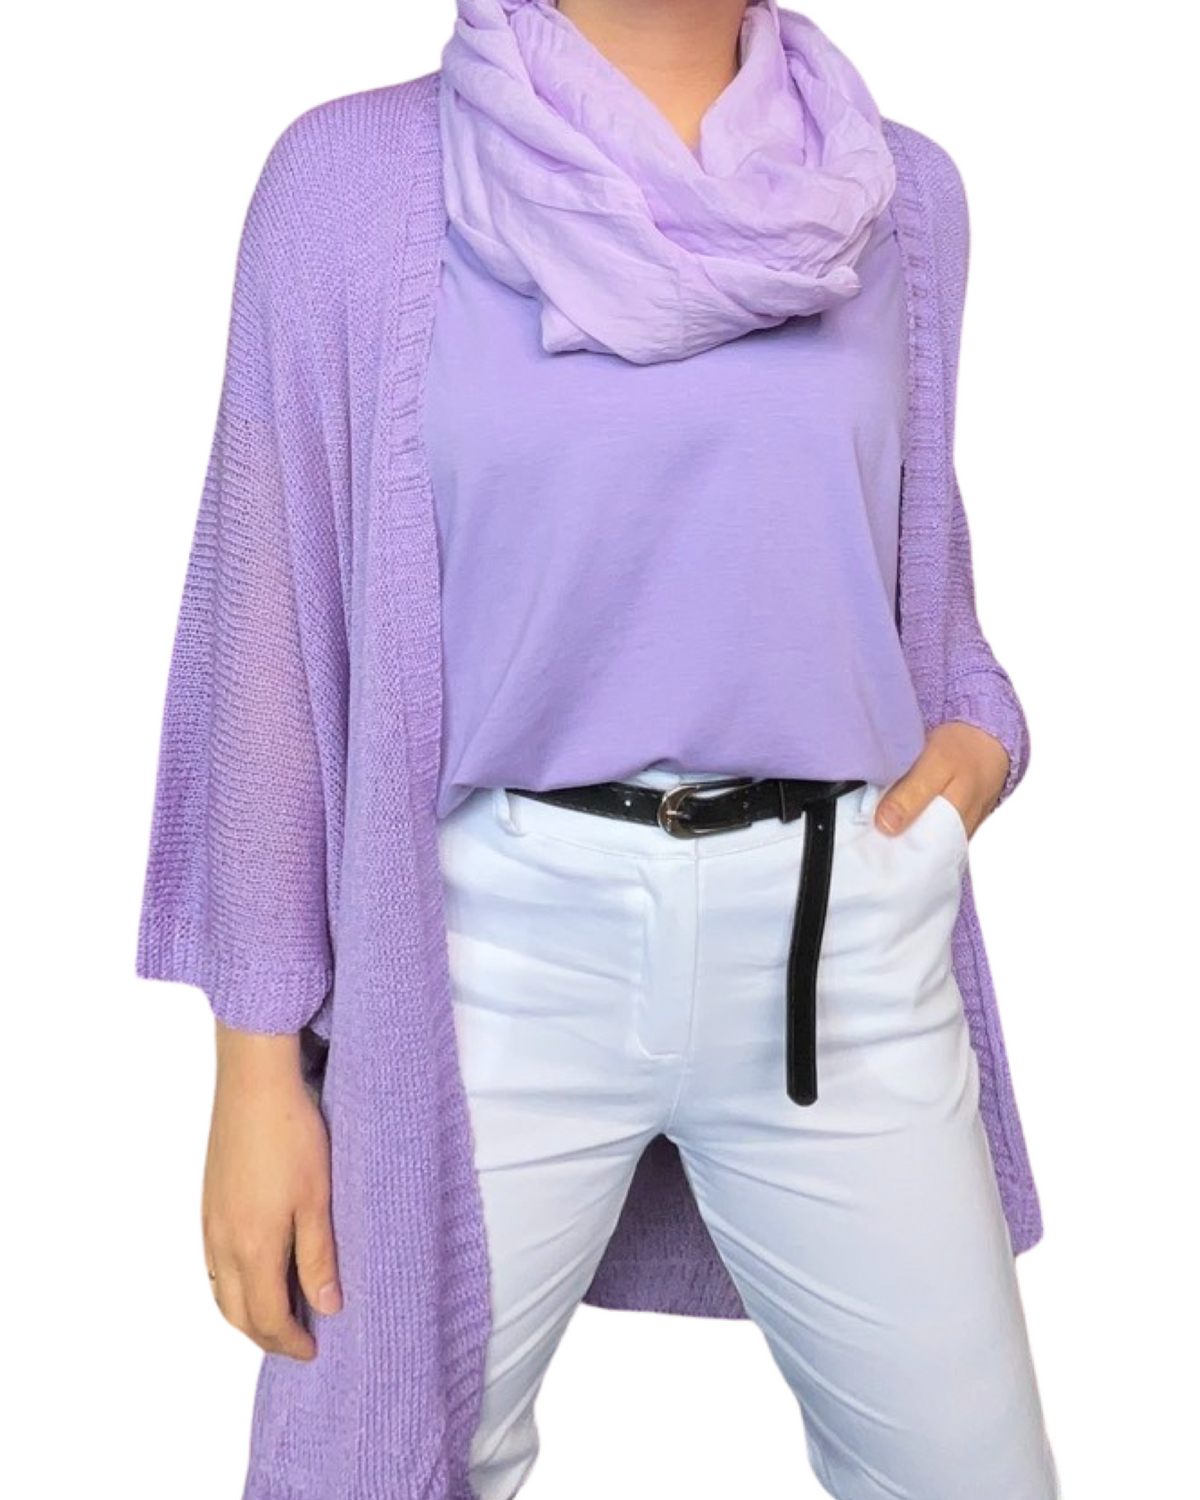 T-shirt couleur unie pour femme avec foulard lilas.